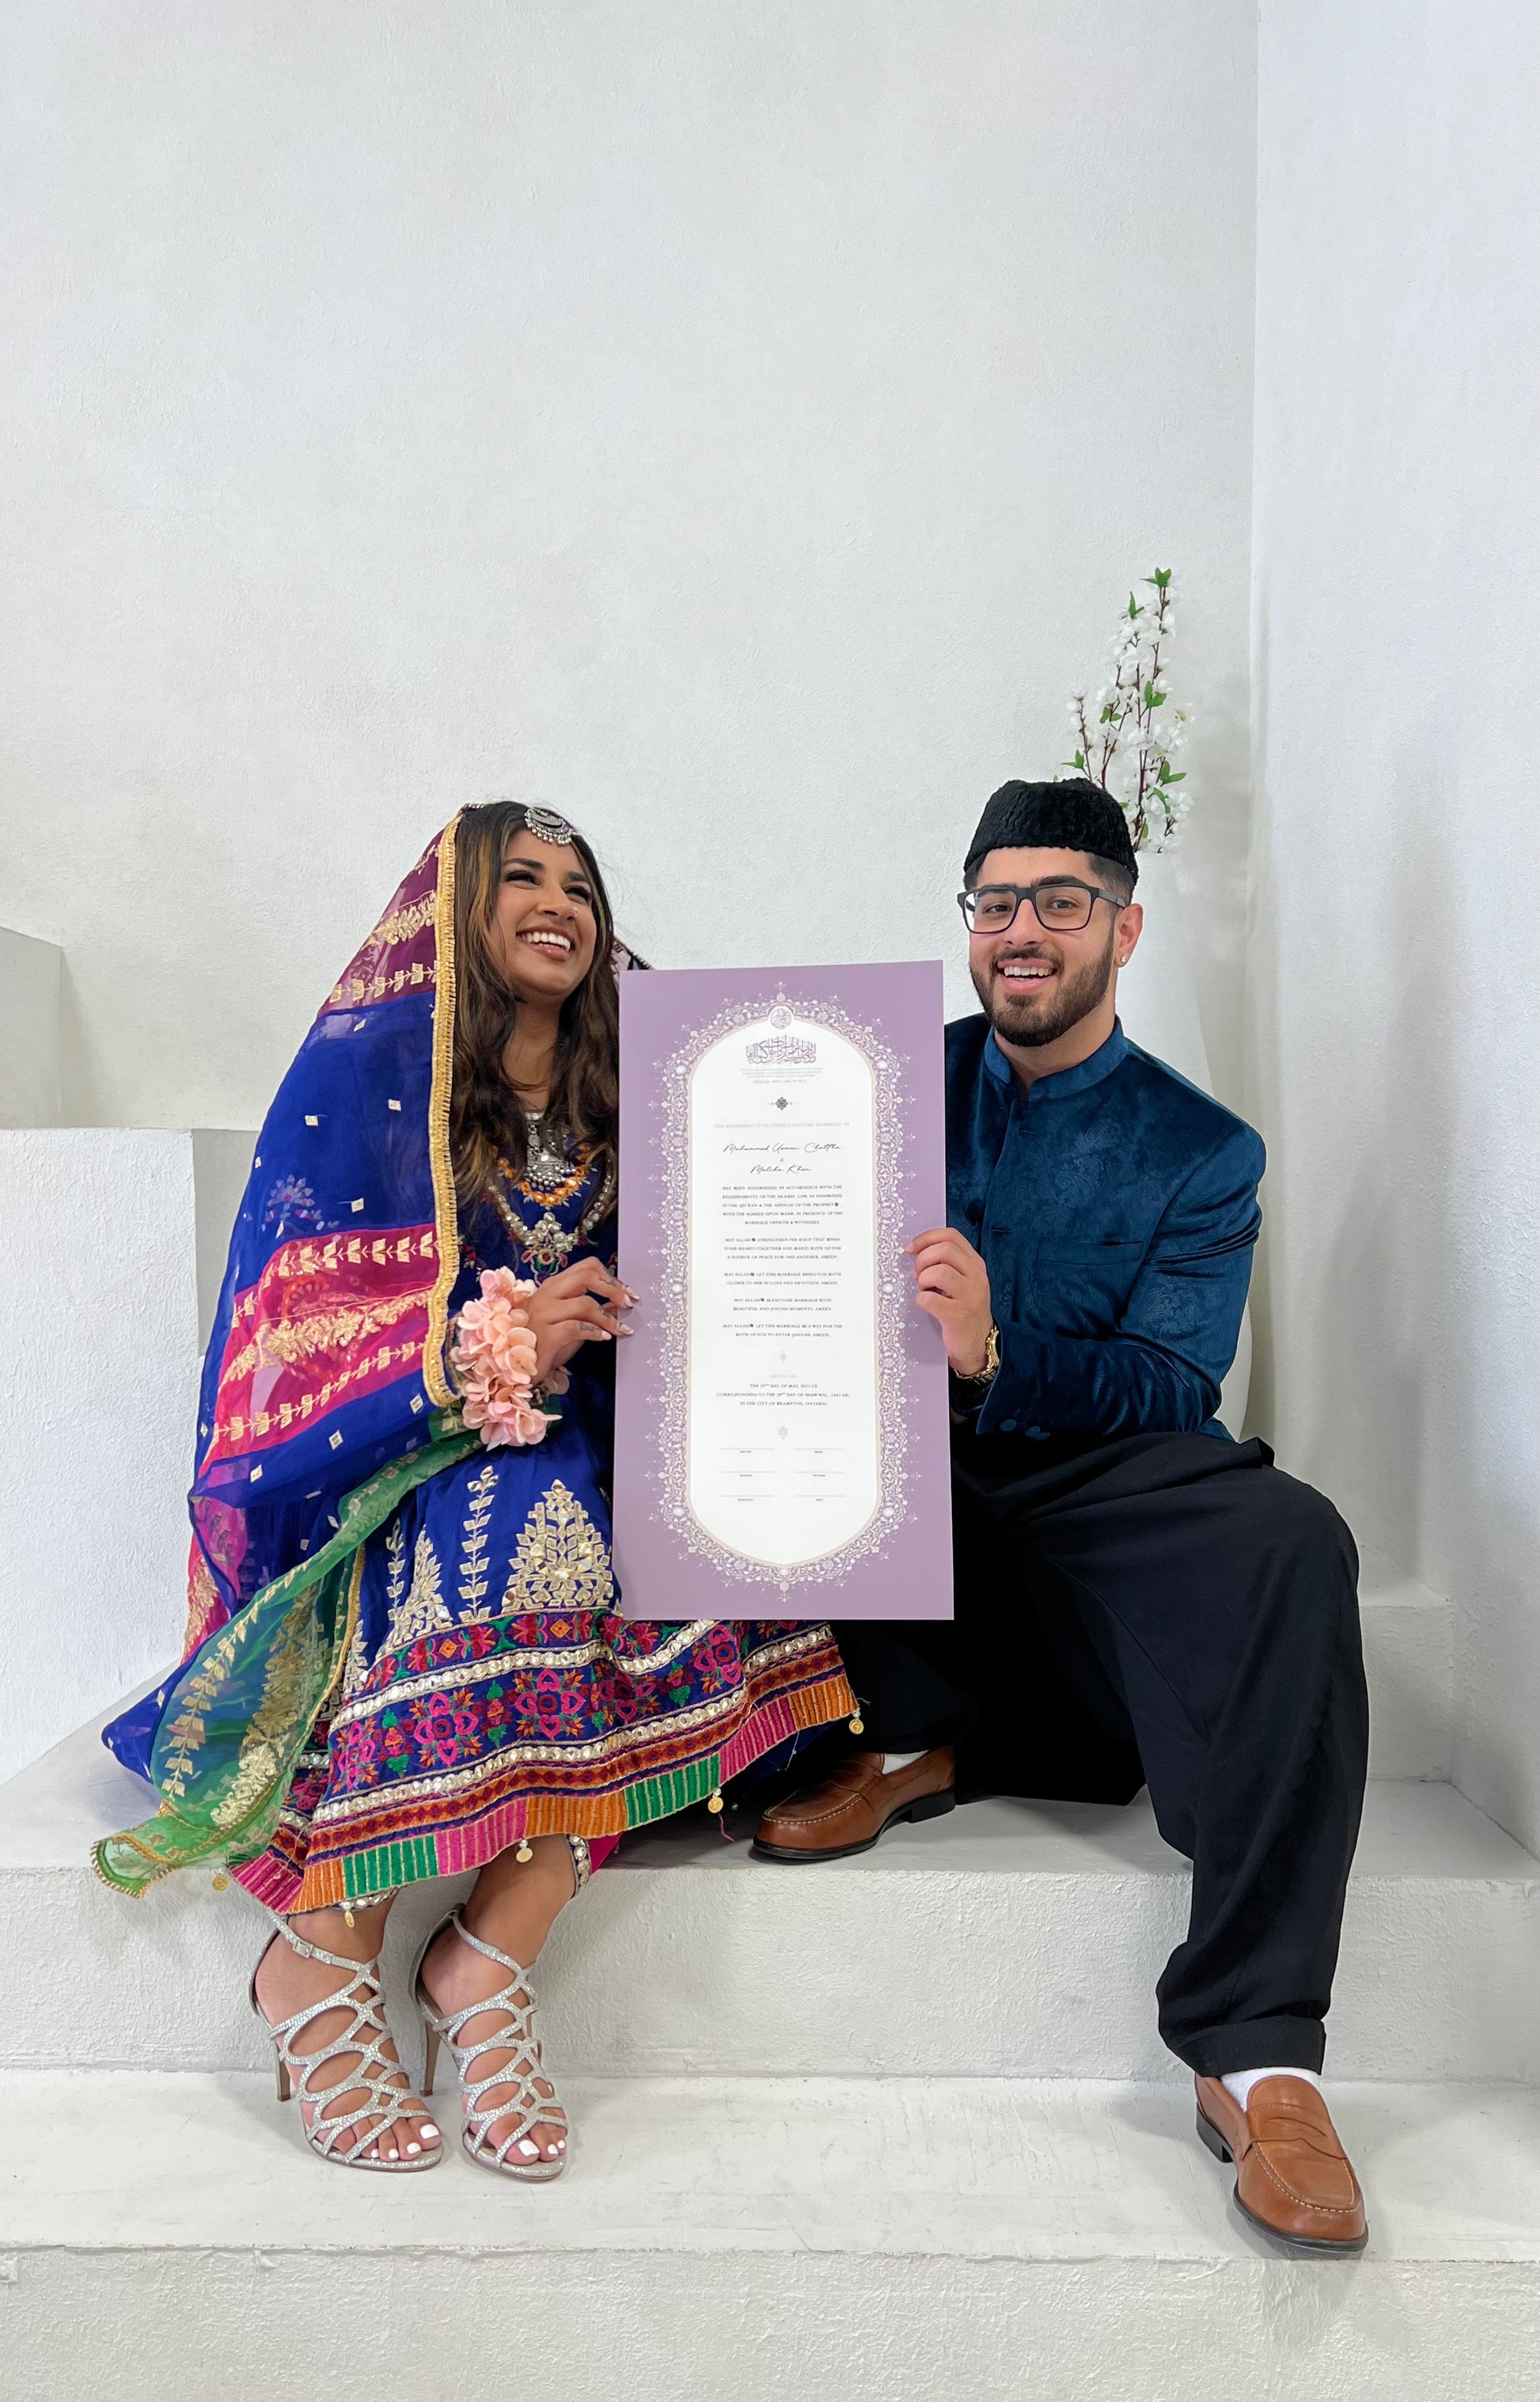 Nikahnama, Nikah Certificate, Nikkah Certificate, nikah-nama, etsy nikah, nikah contract, nikkah, katbkitab, muslim contract, Islamic Marriage certificate